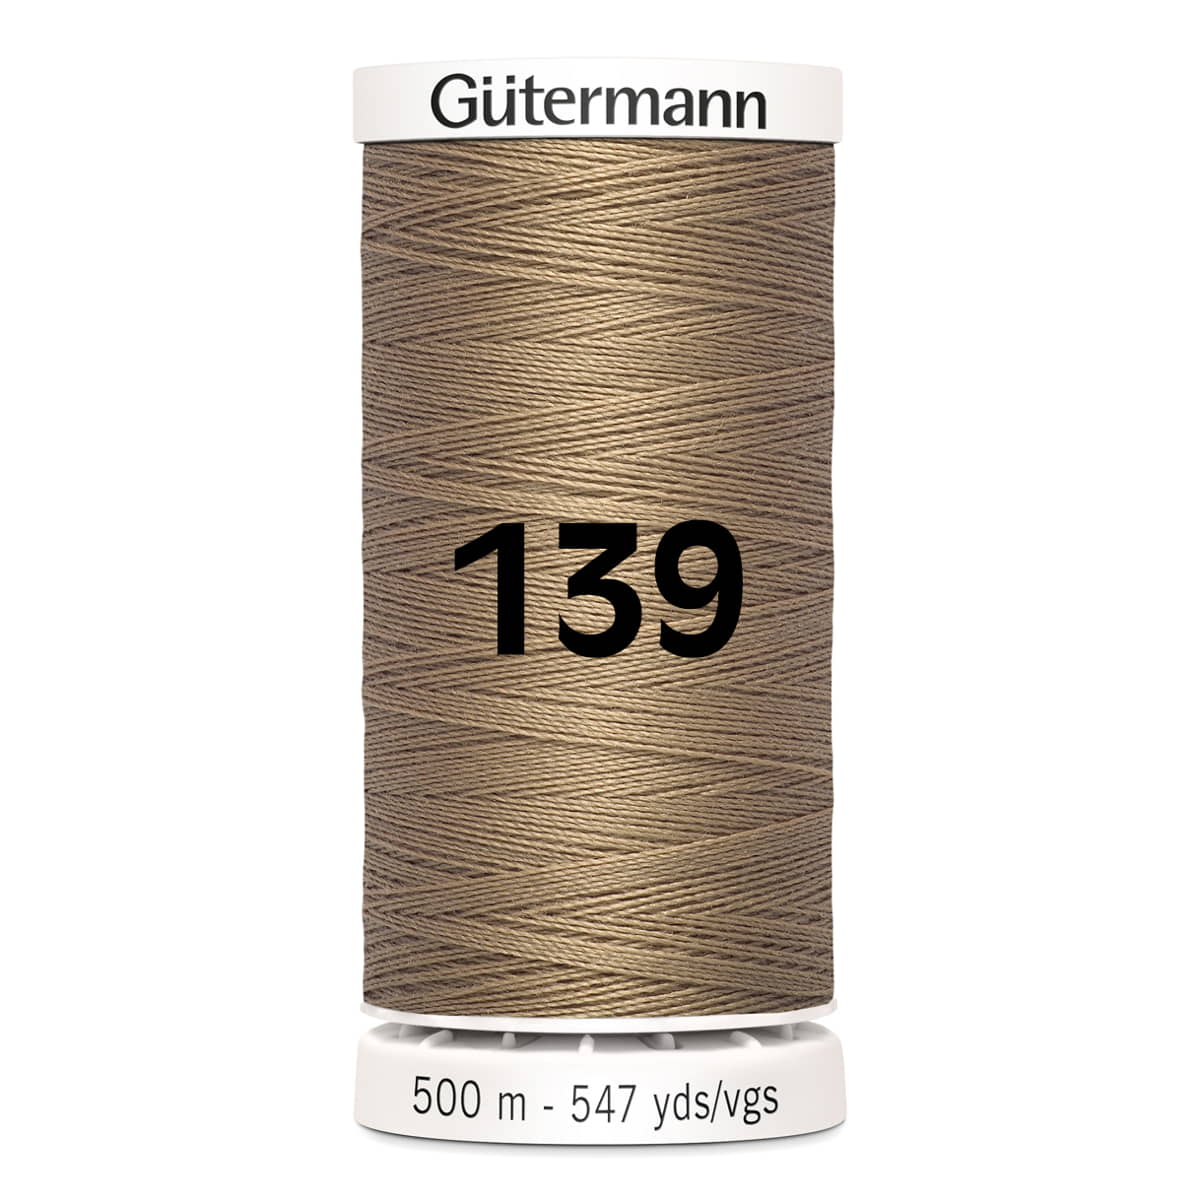 Gutermann naaigaren | 500m | 139 donker beige naaigaren GM-500-139-DONKER-BEIGE 4008015036089